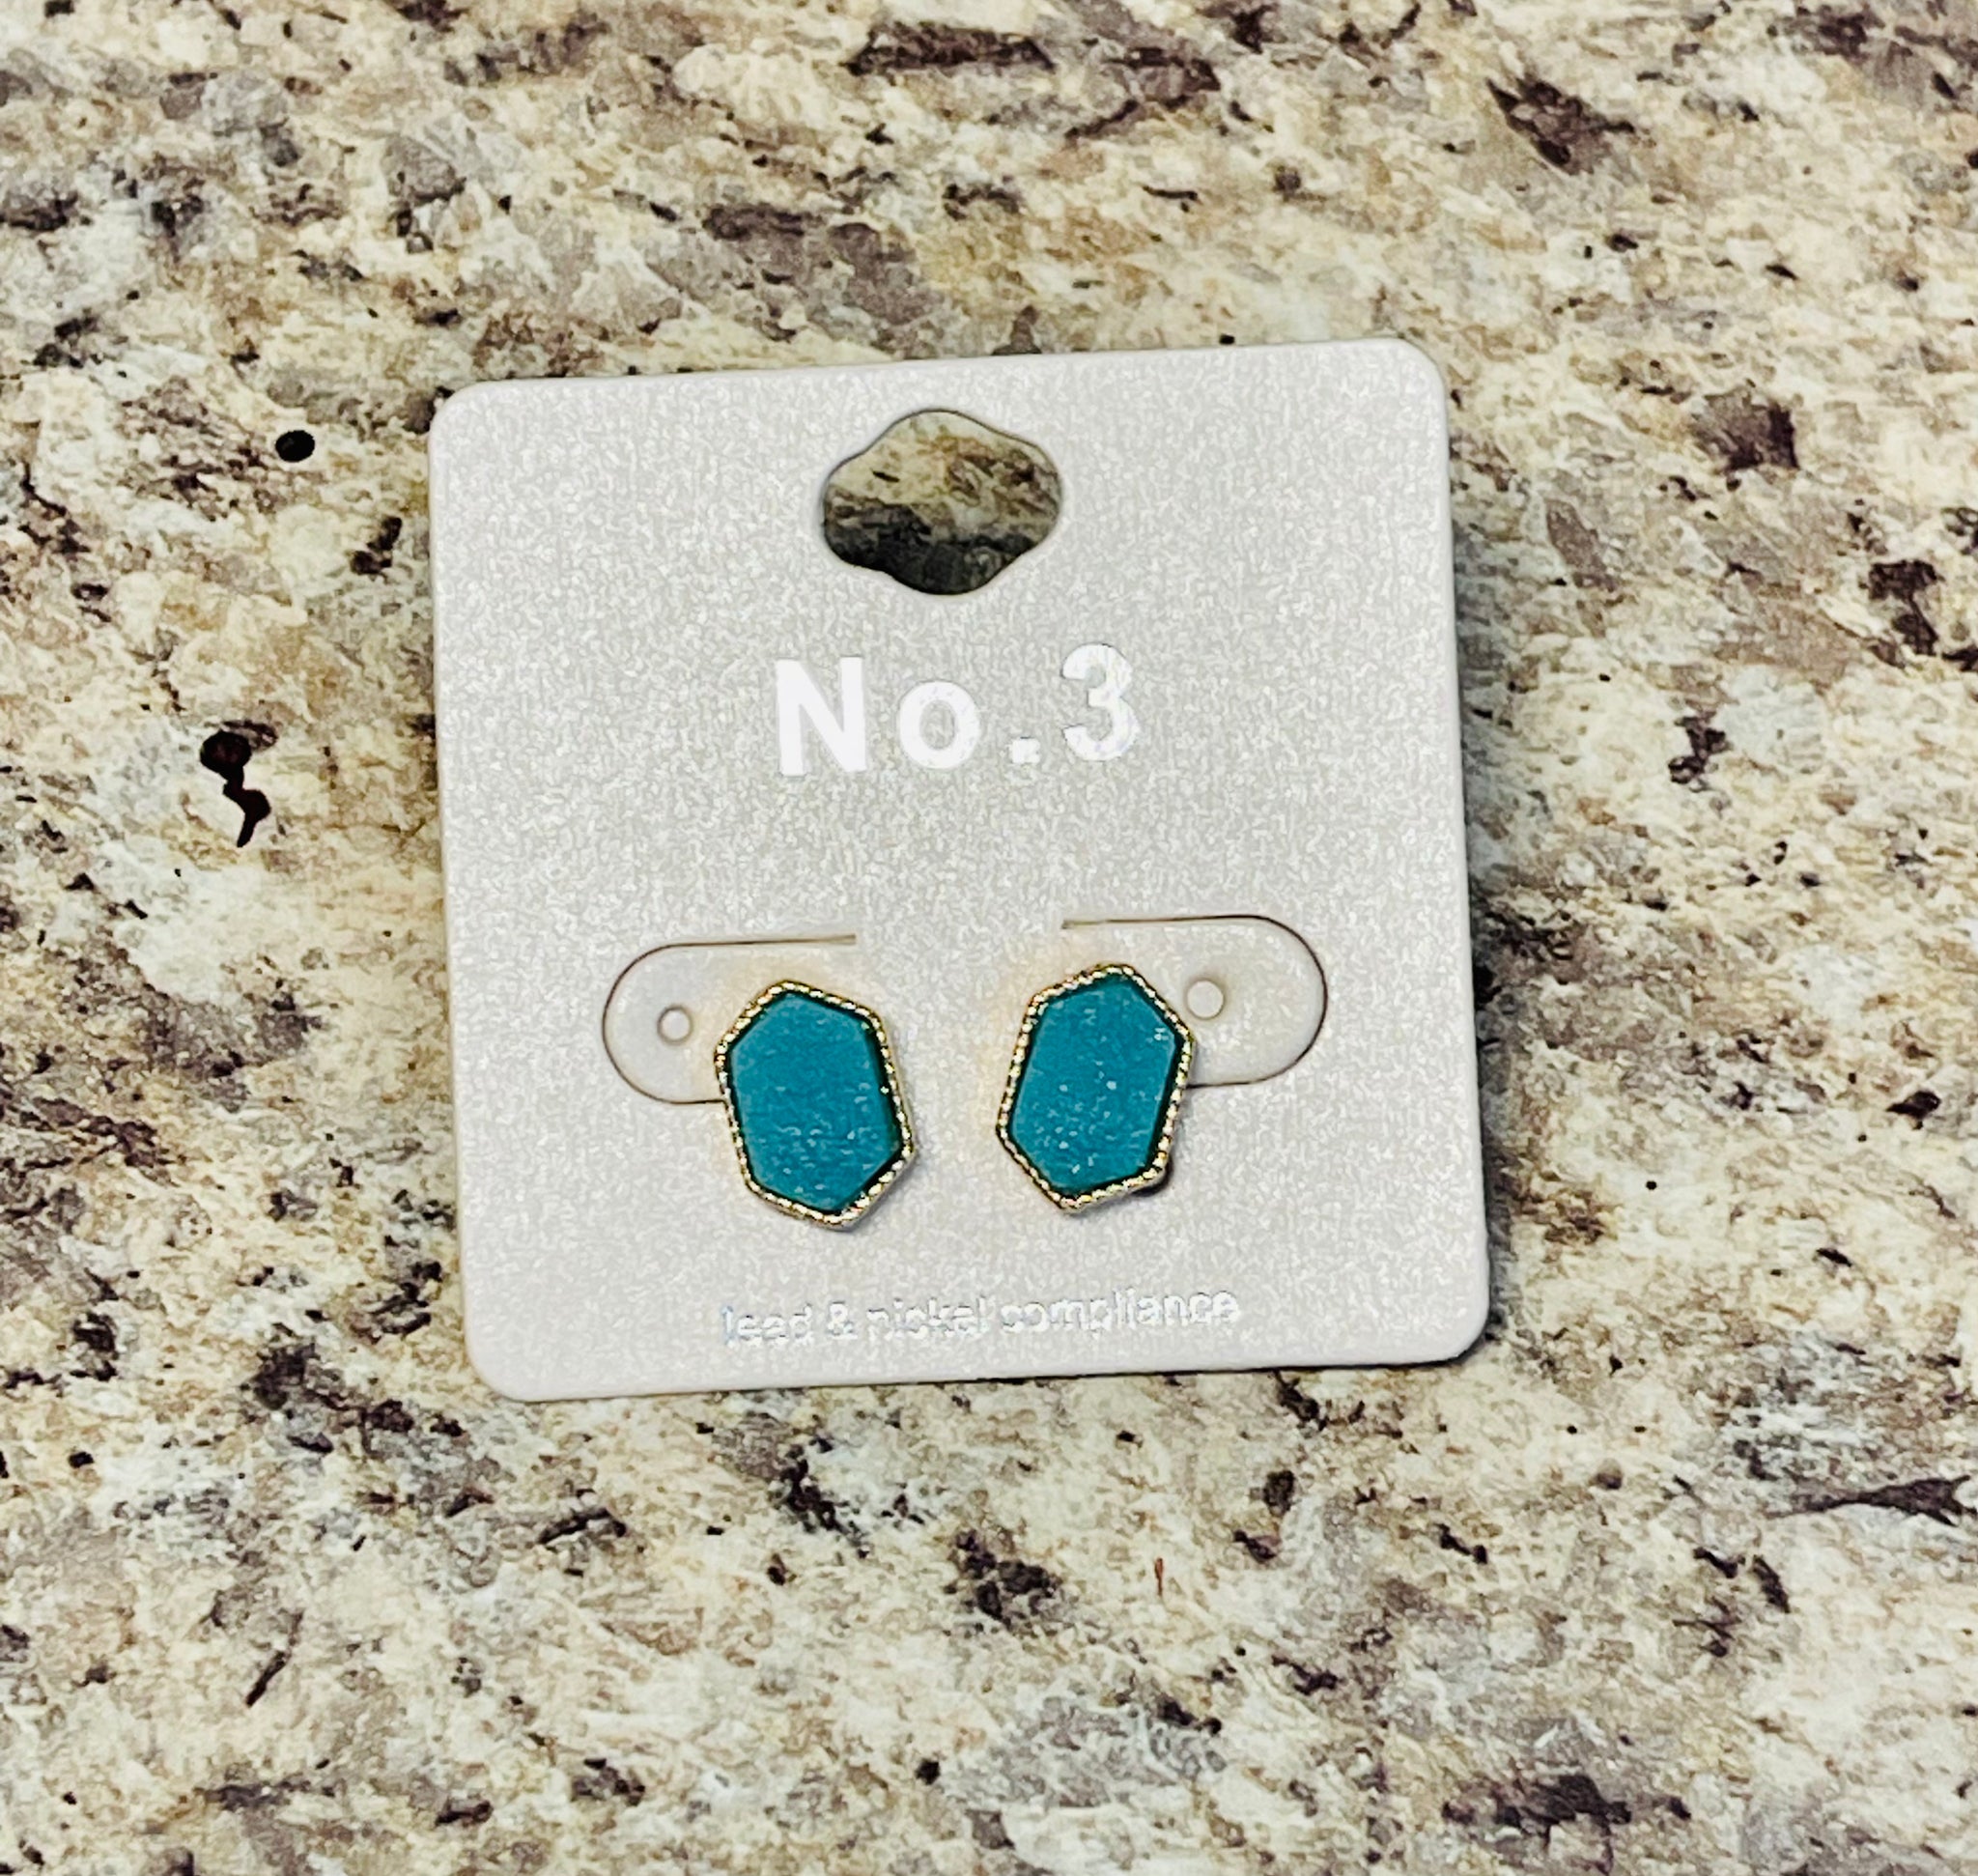 Turquoise dainty druzy earrings